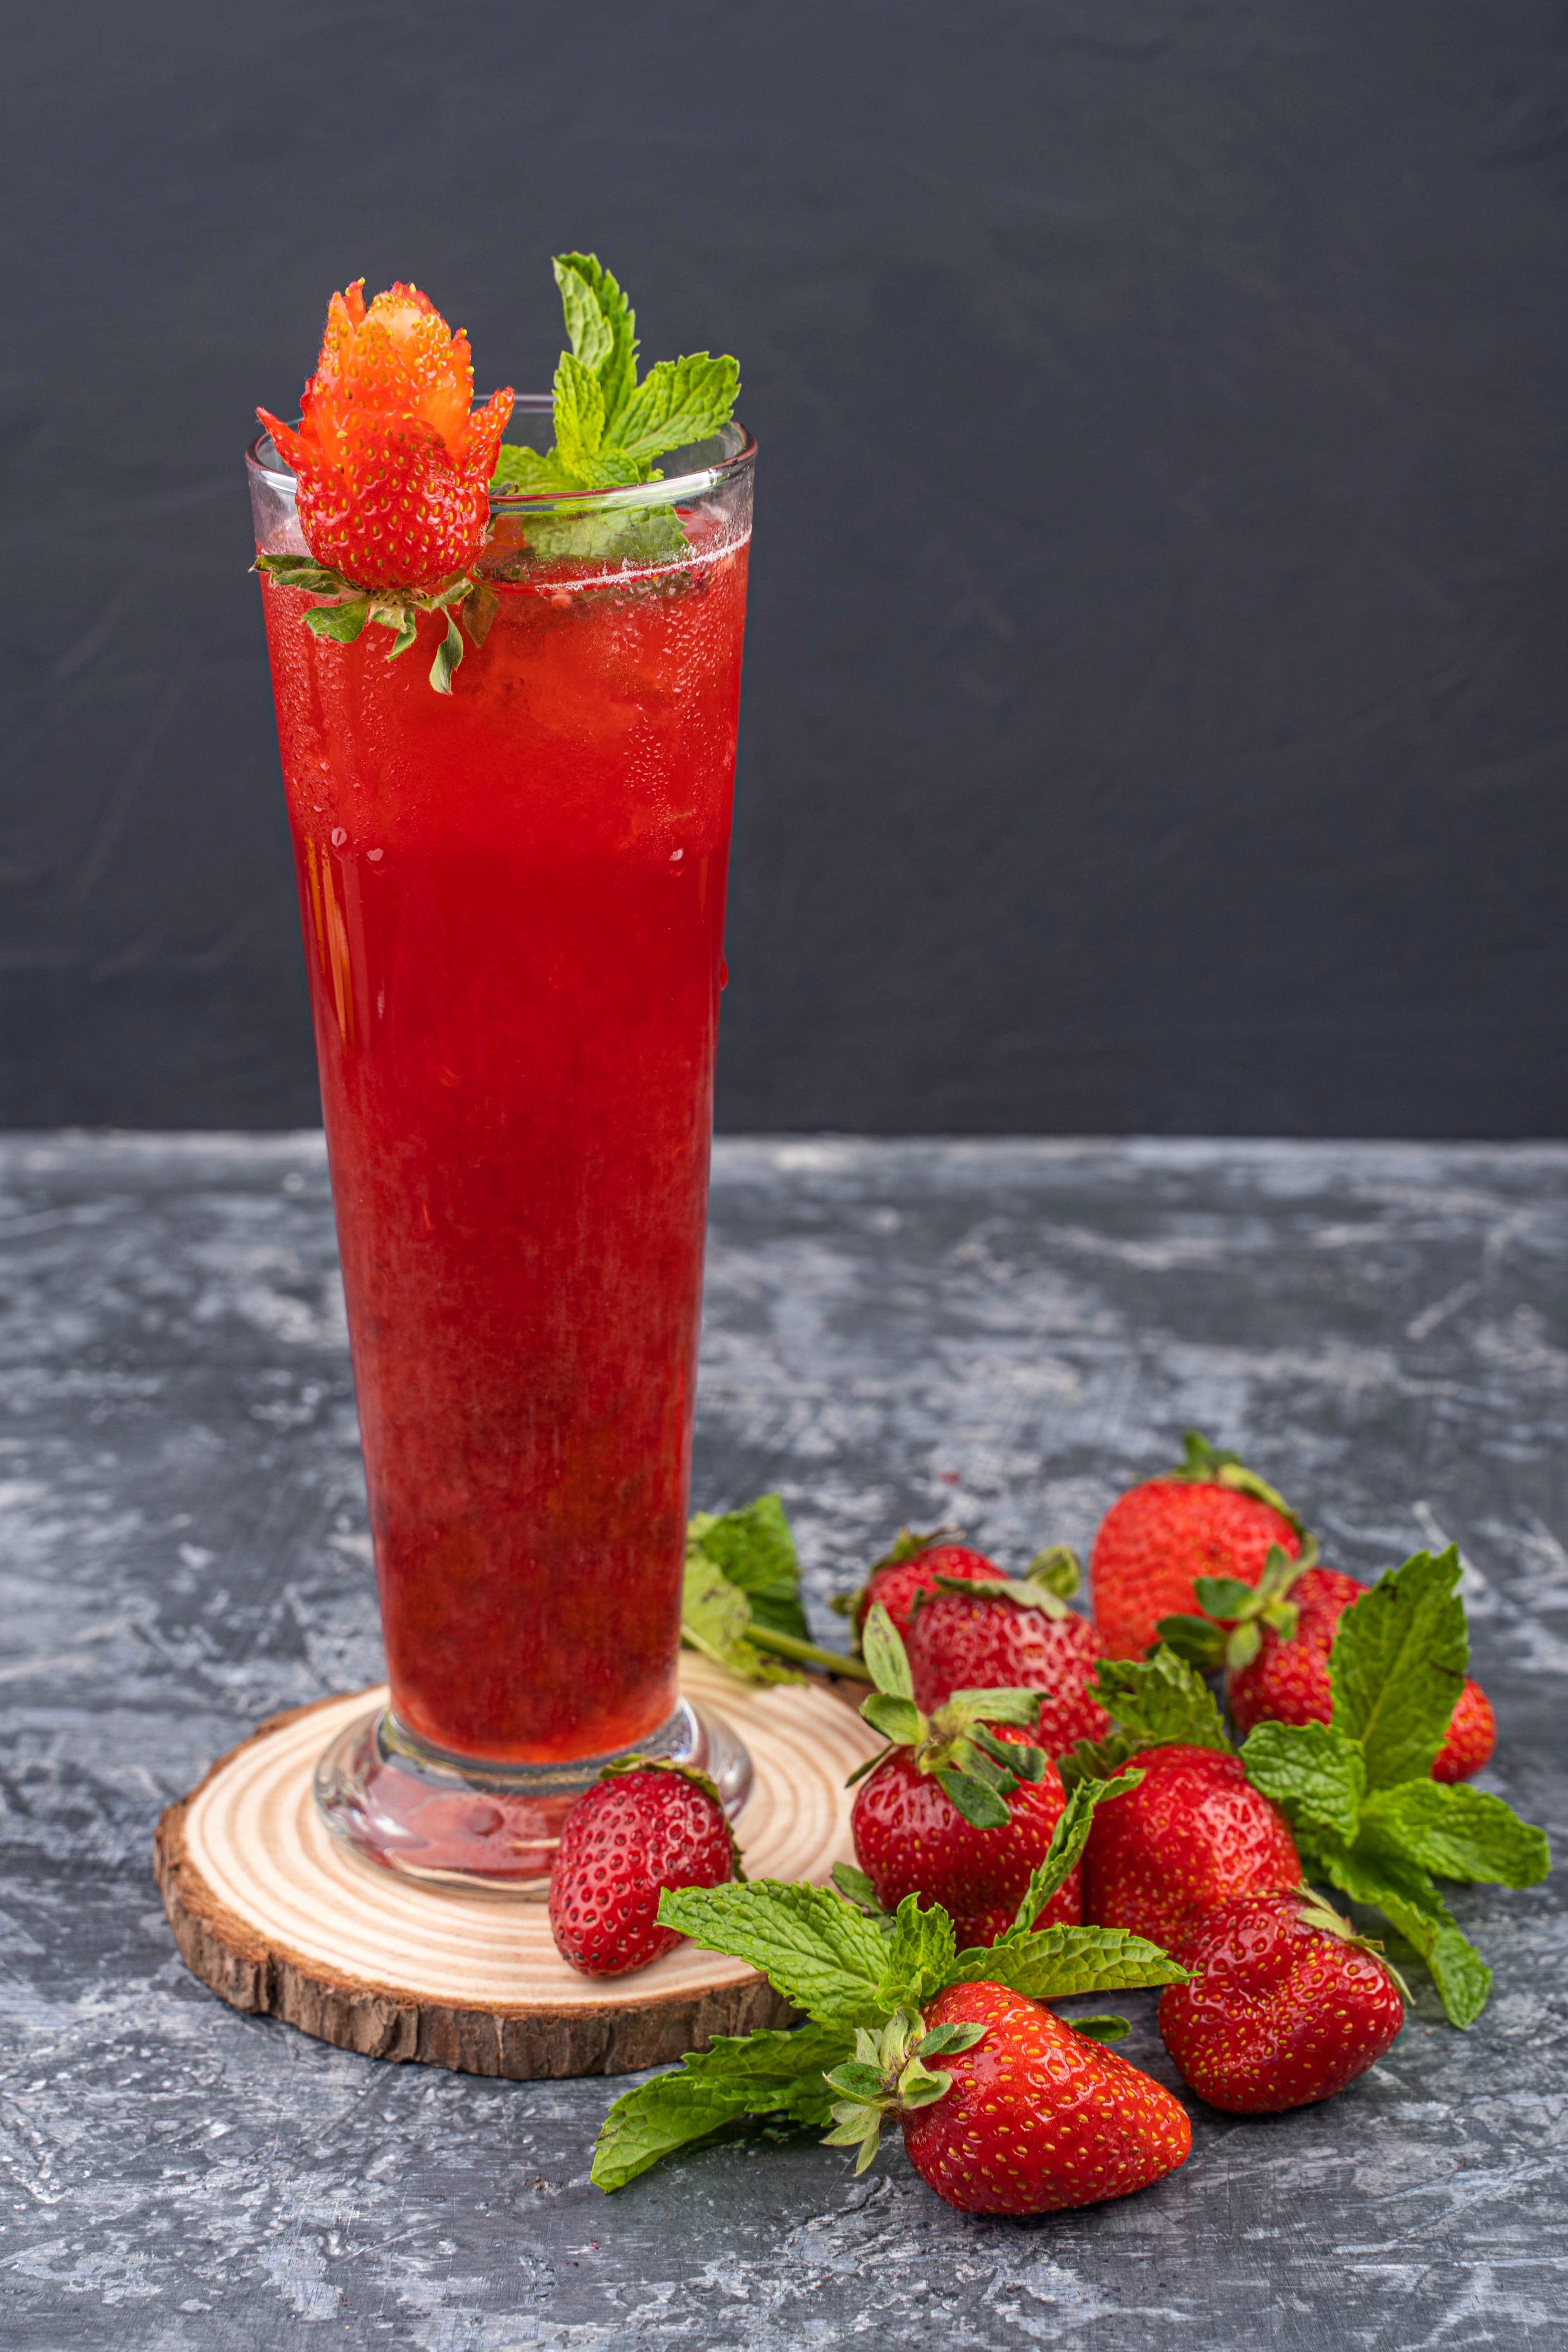 strawberry juice